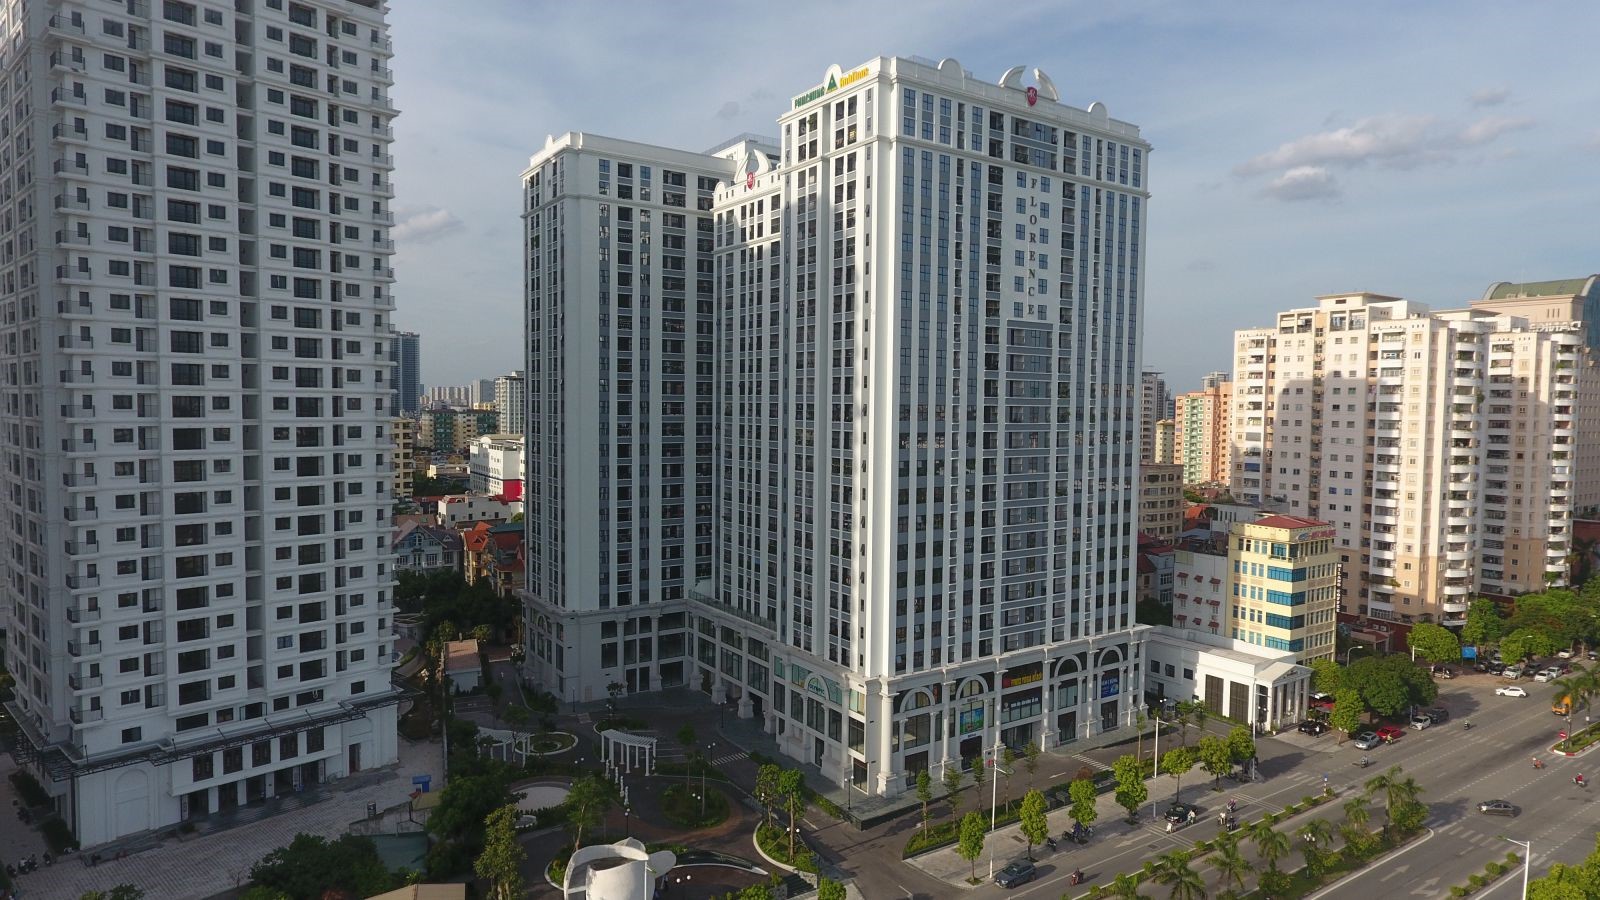 nhung-cau-hoi-thuong-gap-ve-chung-cu-florence-tower-cho-nguoi-mua-lan-dau-tham-khao-onehousing-1